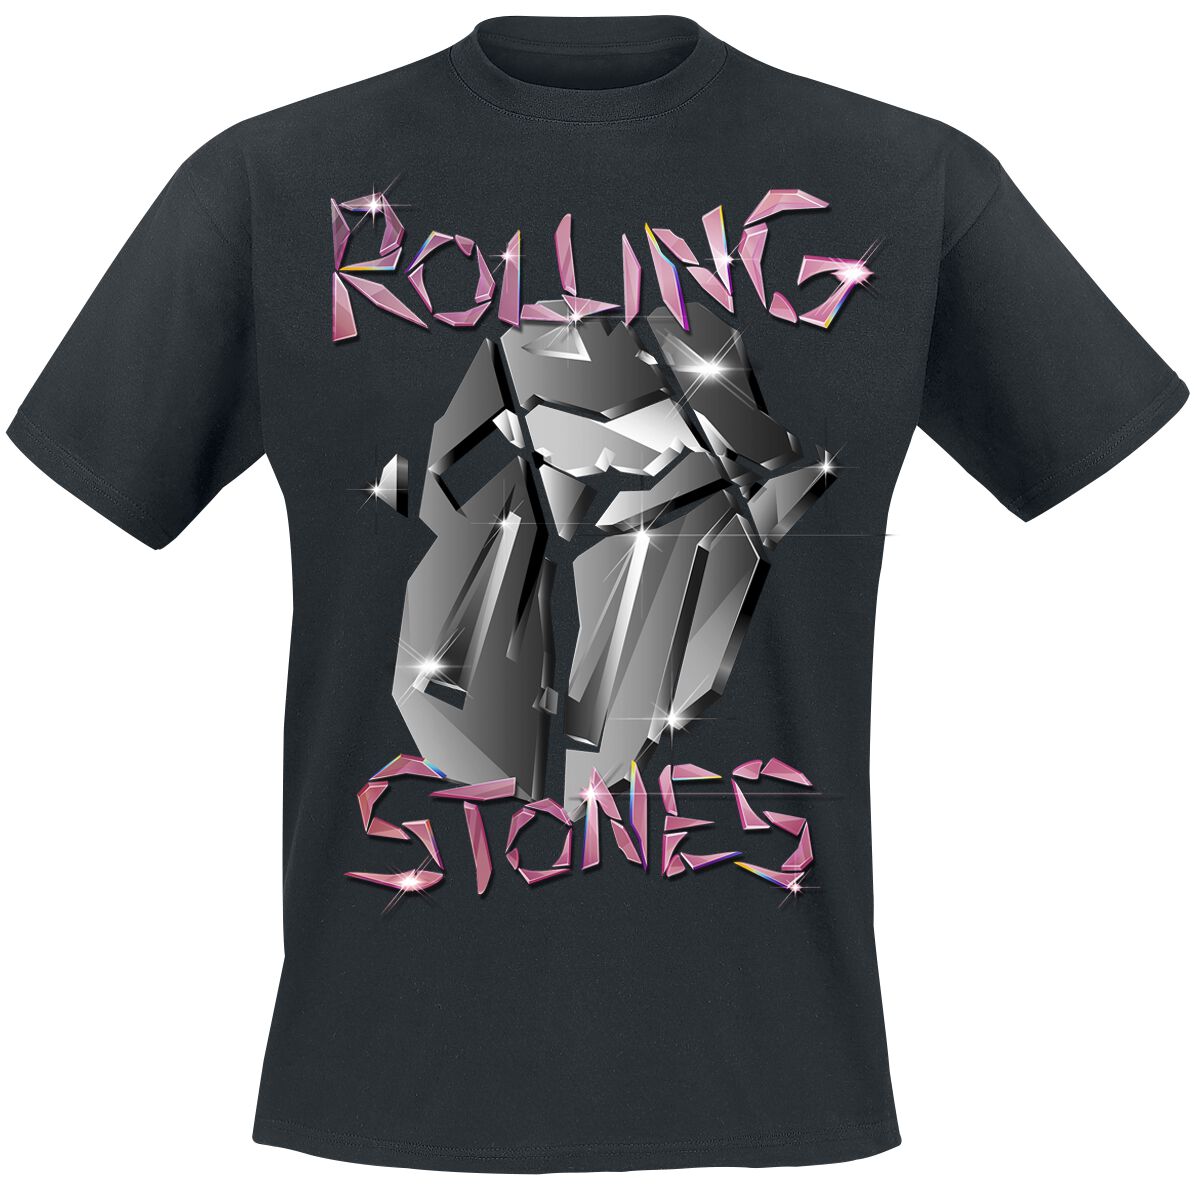 The Rolling Stones T-Shirt - Pop Up Tour Germany - Exclusive T-Shirt - S bis 3XL - für Männer - Größe XL - schwarz  - EMP exklusives Merchandise!